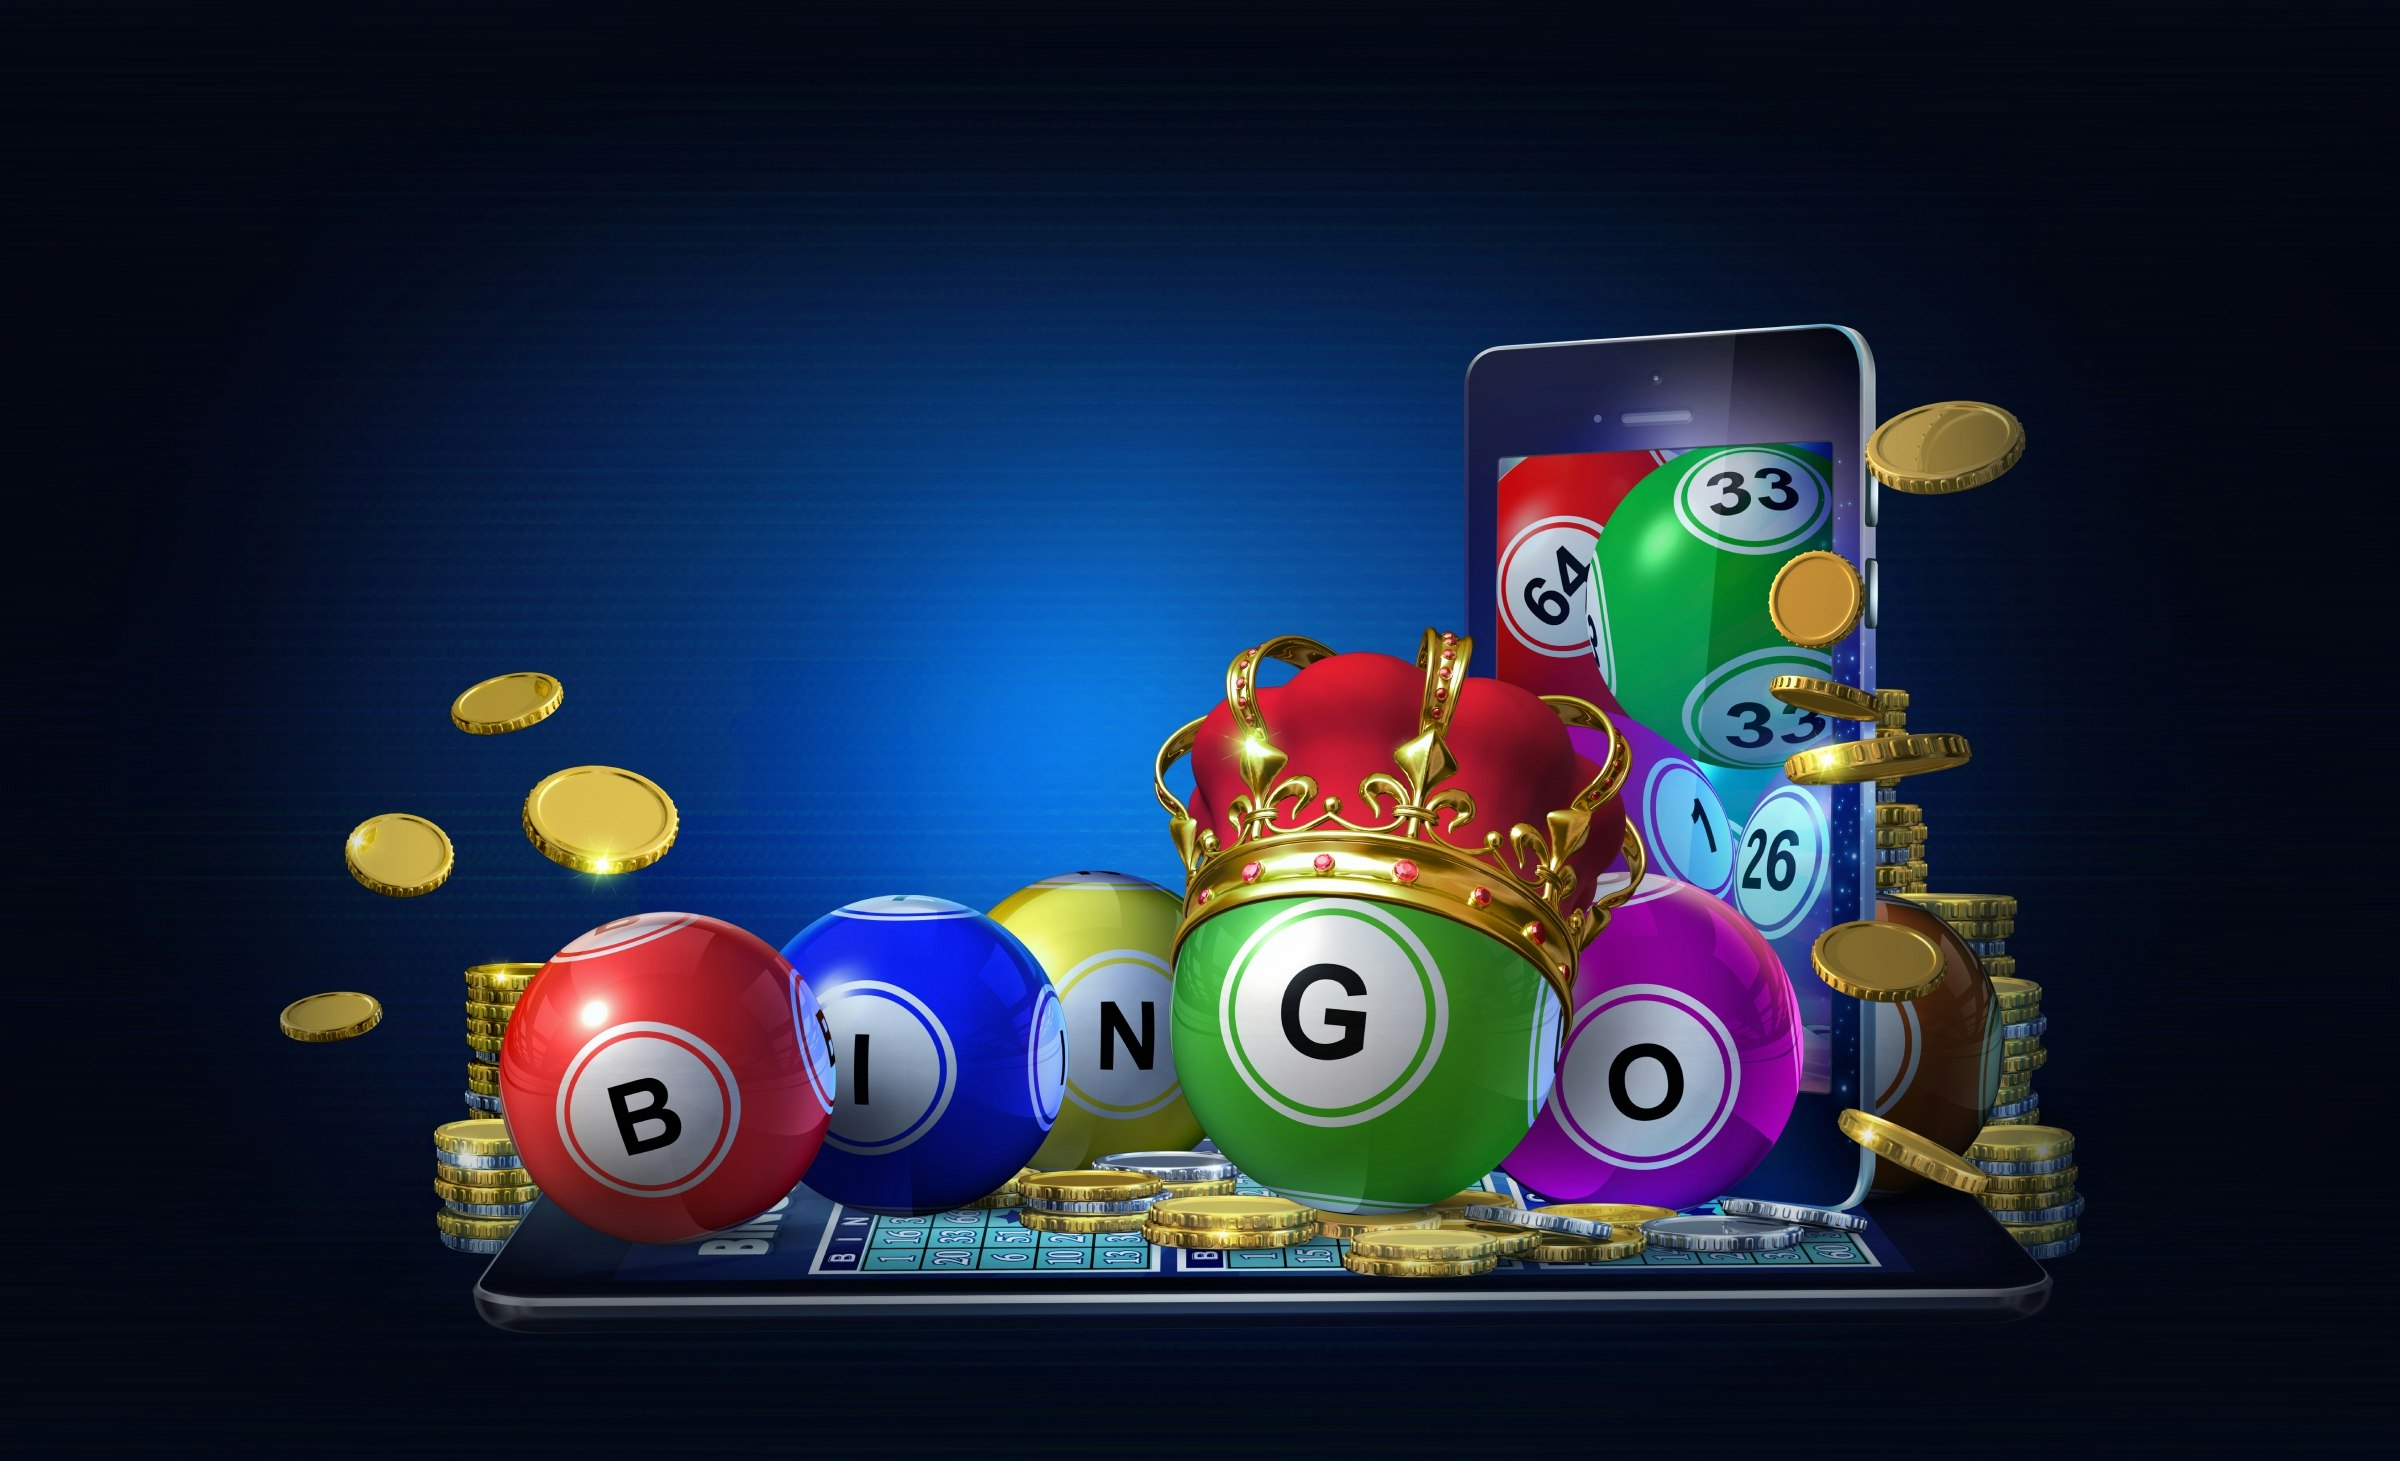 BINGO! Best strategies to win at online bingo games